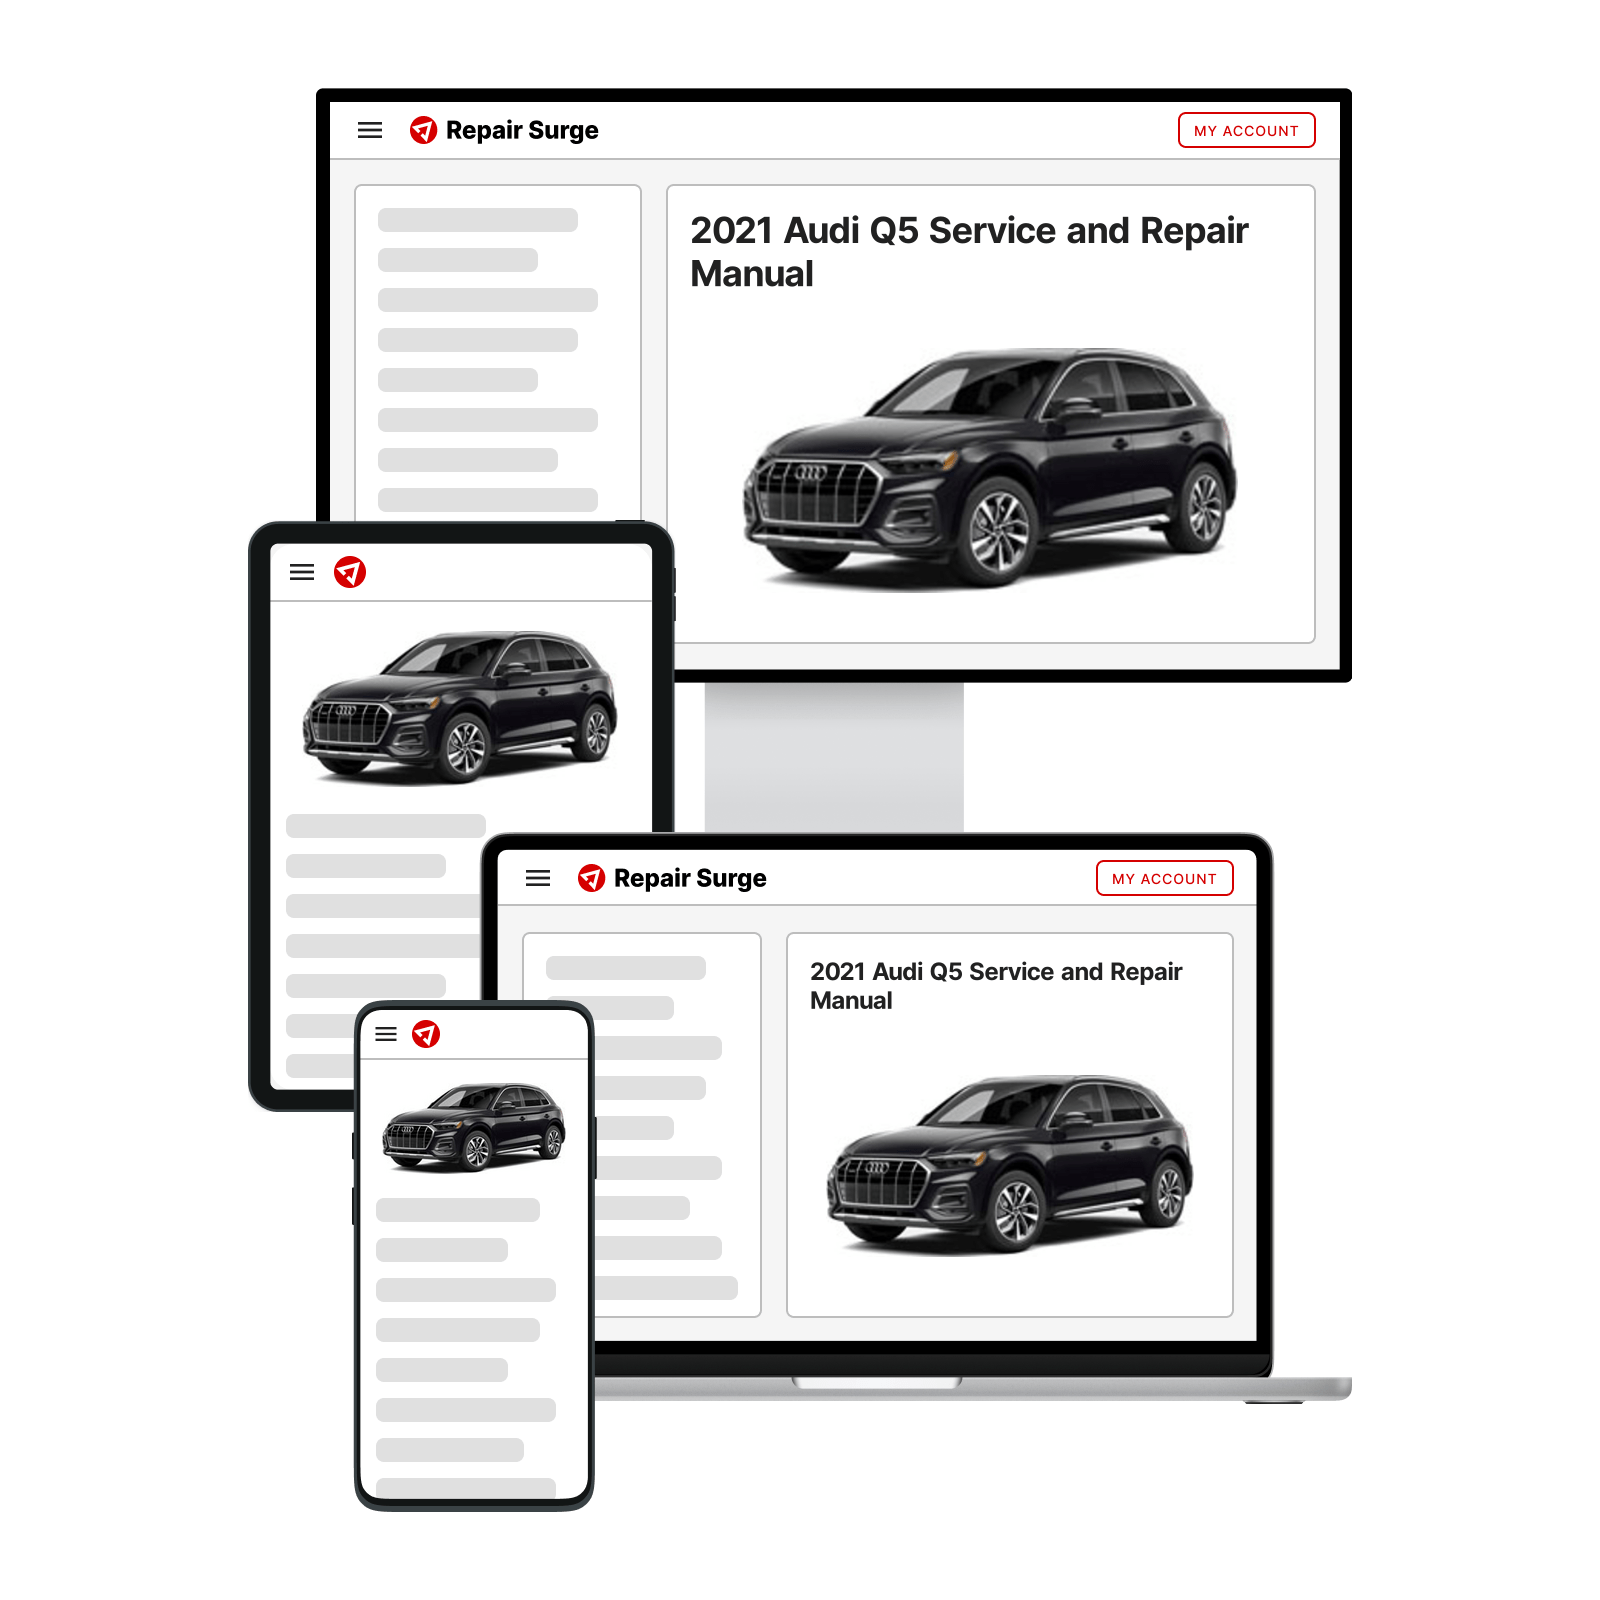 2021 Audi Q5 service and repair manual hero image